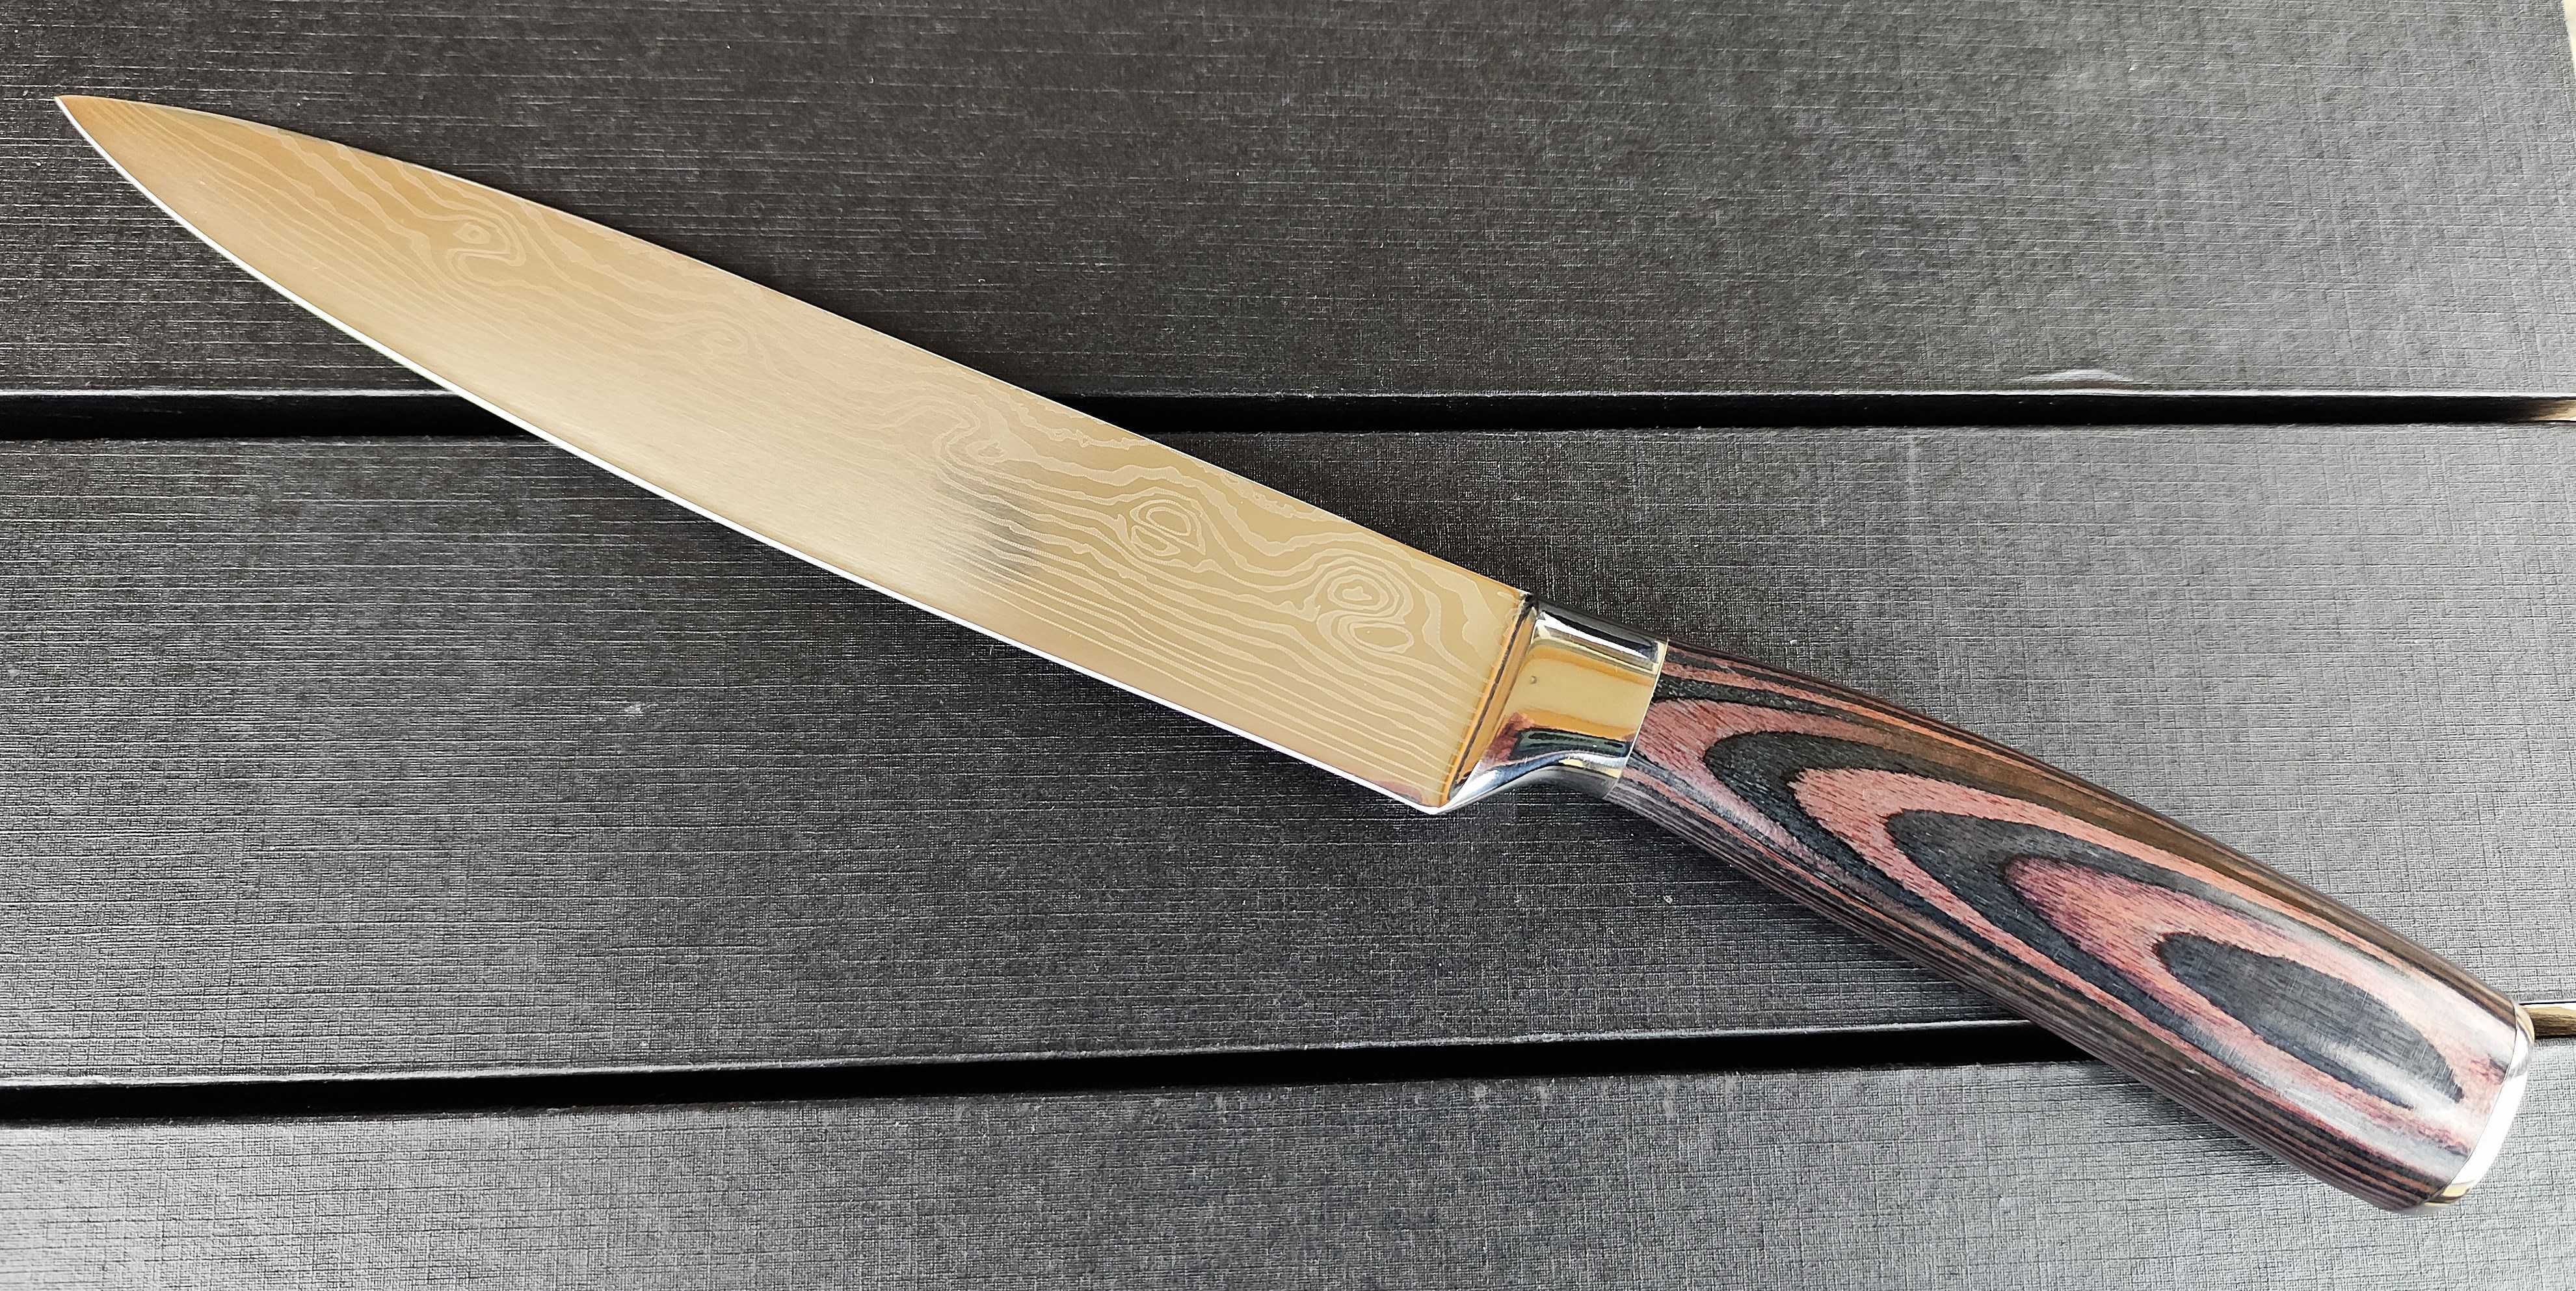 Професионални готварски ножове